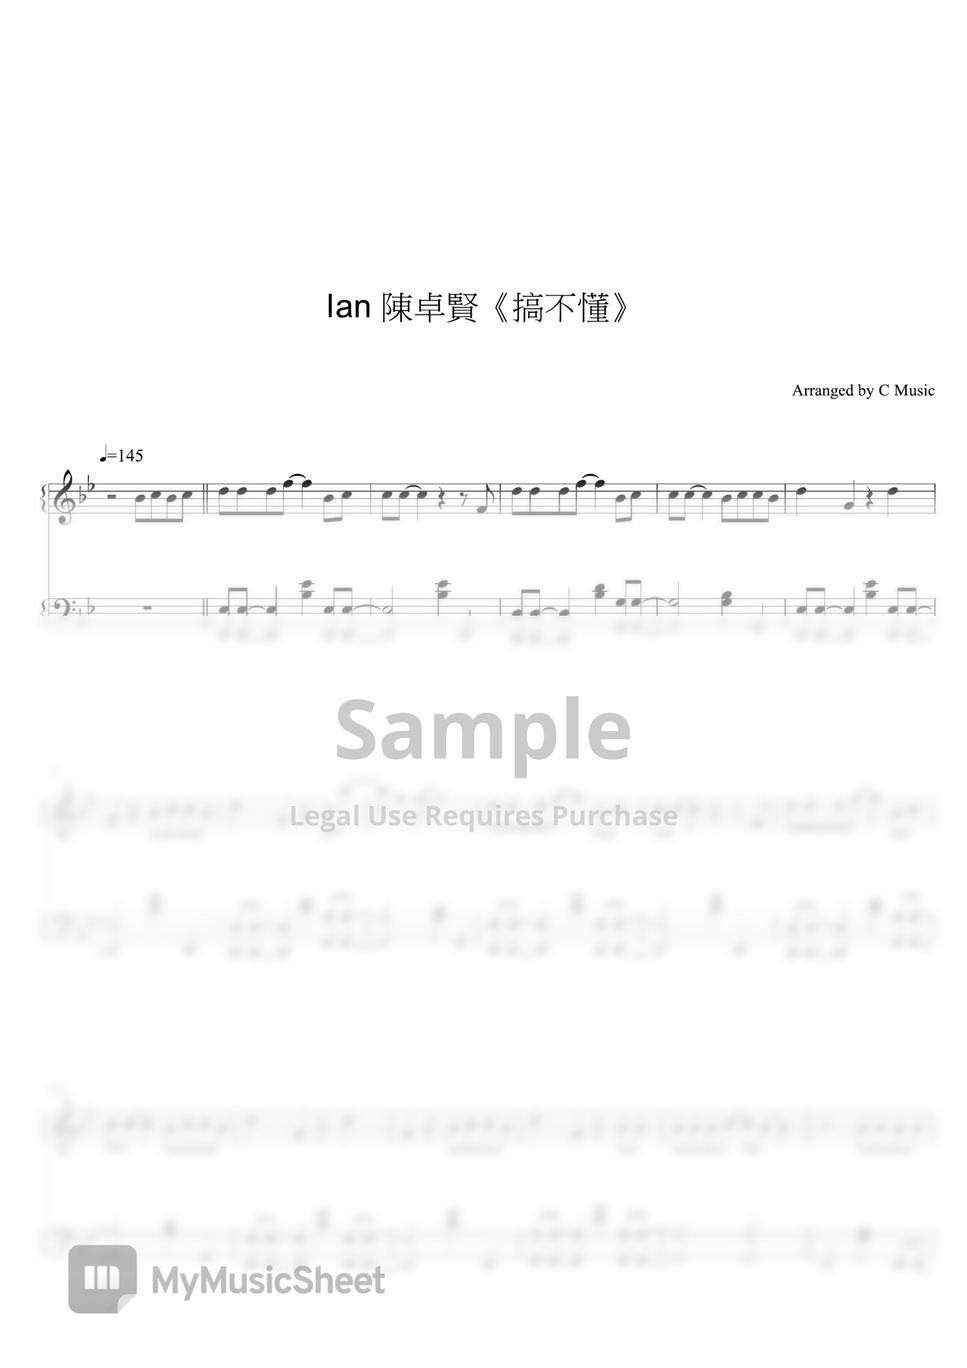 Ian 陳卓賢 - 搞不懂 by C Music